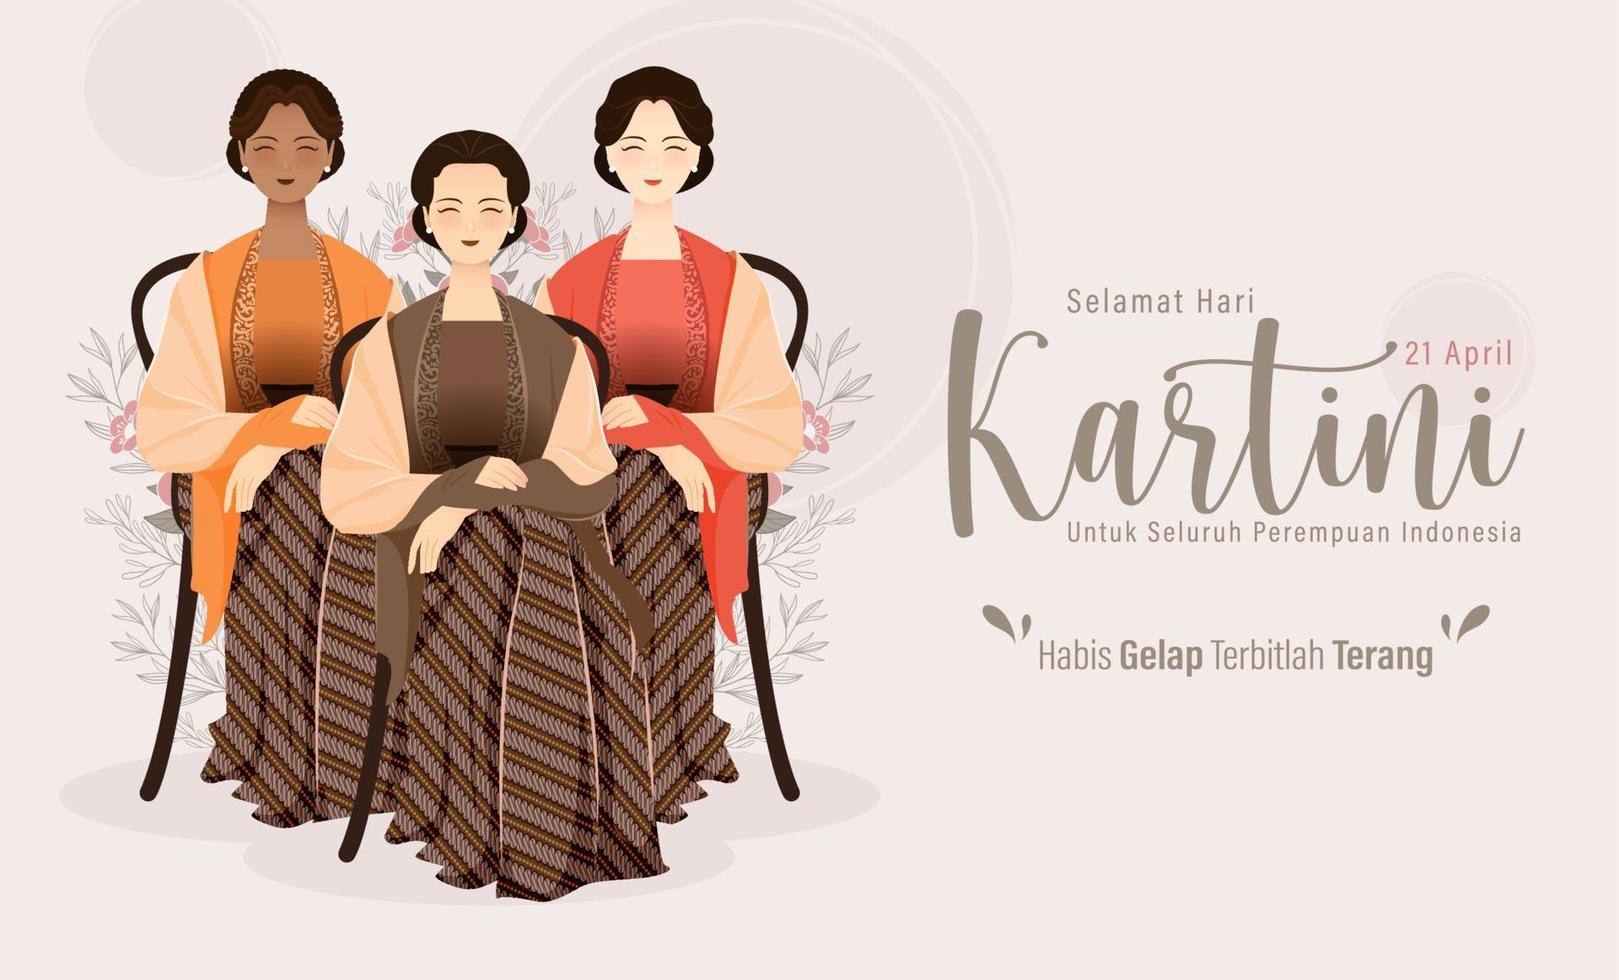 selamat hari kartini signifie joyeux jour de kartini. kartini est une héroïne indonésienne. habis gelap terbitlah terang signifie après l'obscurité vient la lumière. illustration vectorielle. vecteur